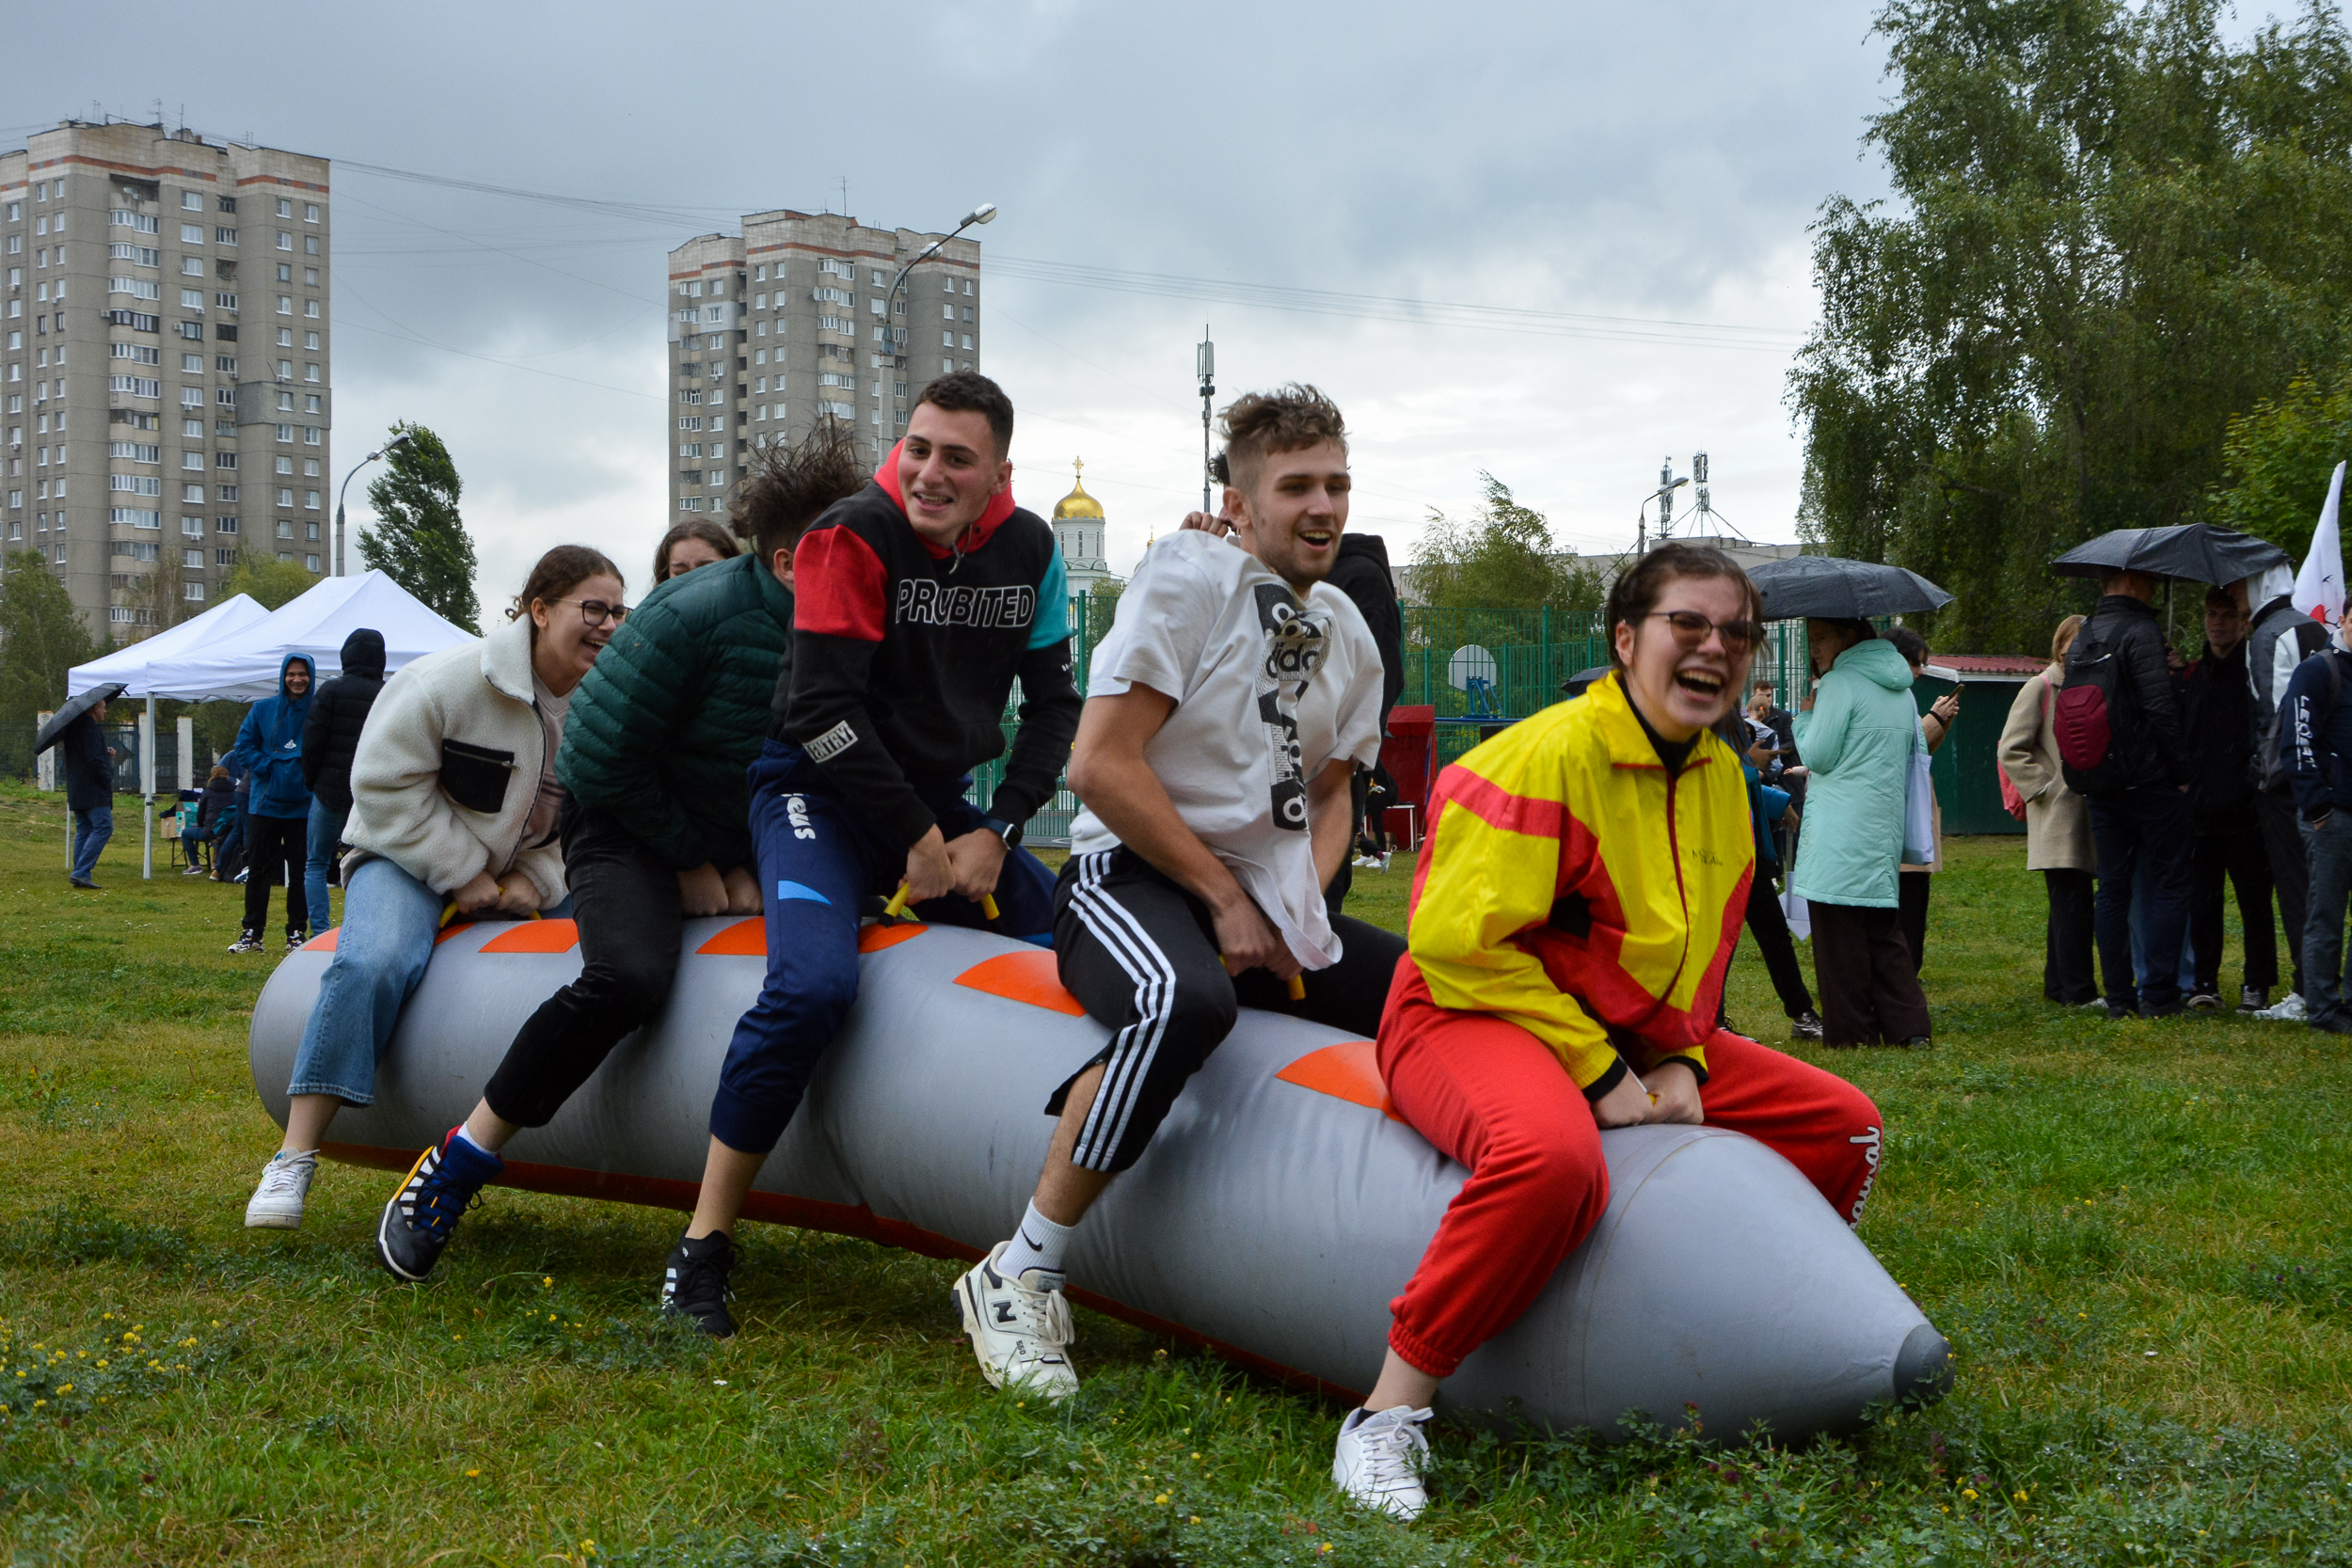 Бесплатные катания на катамаранах, аквагрим и квест ждут нижегородцев в Автозаводском районе 